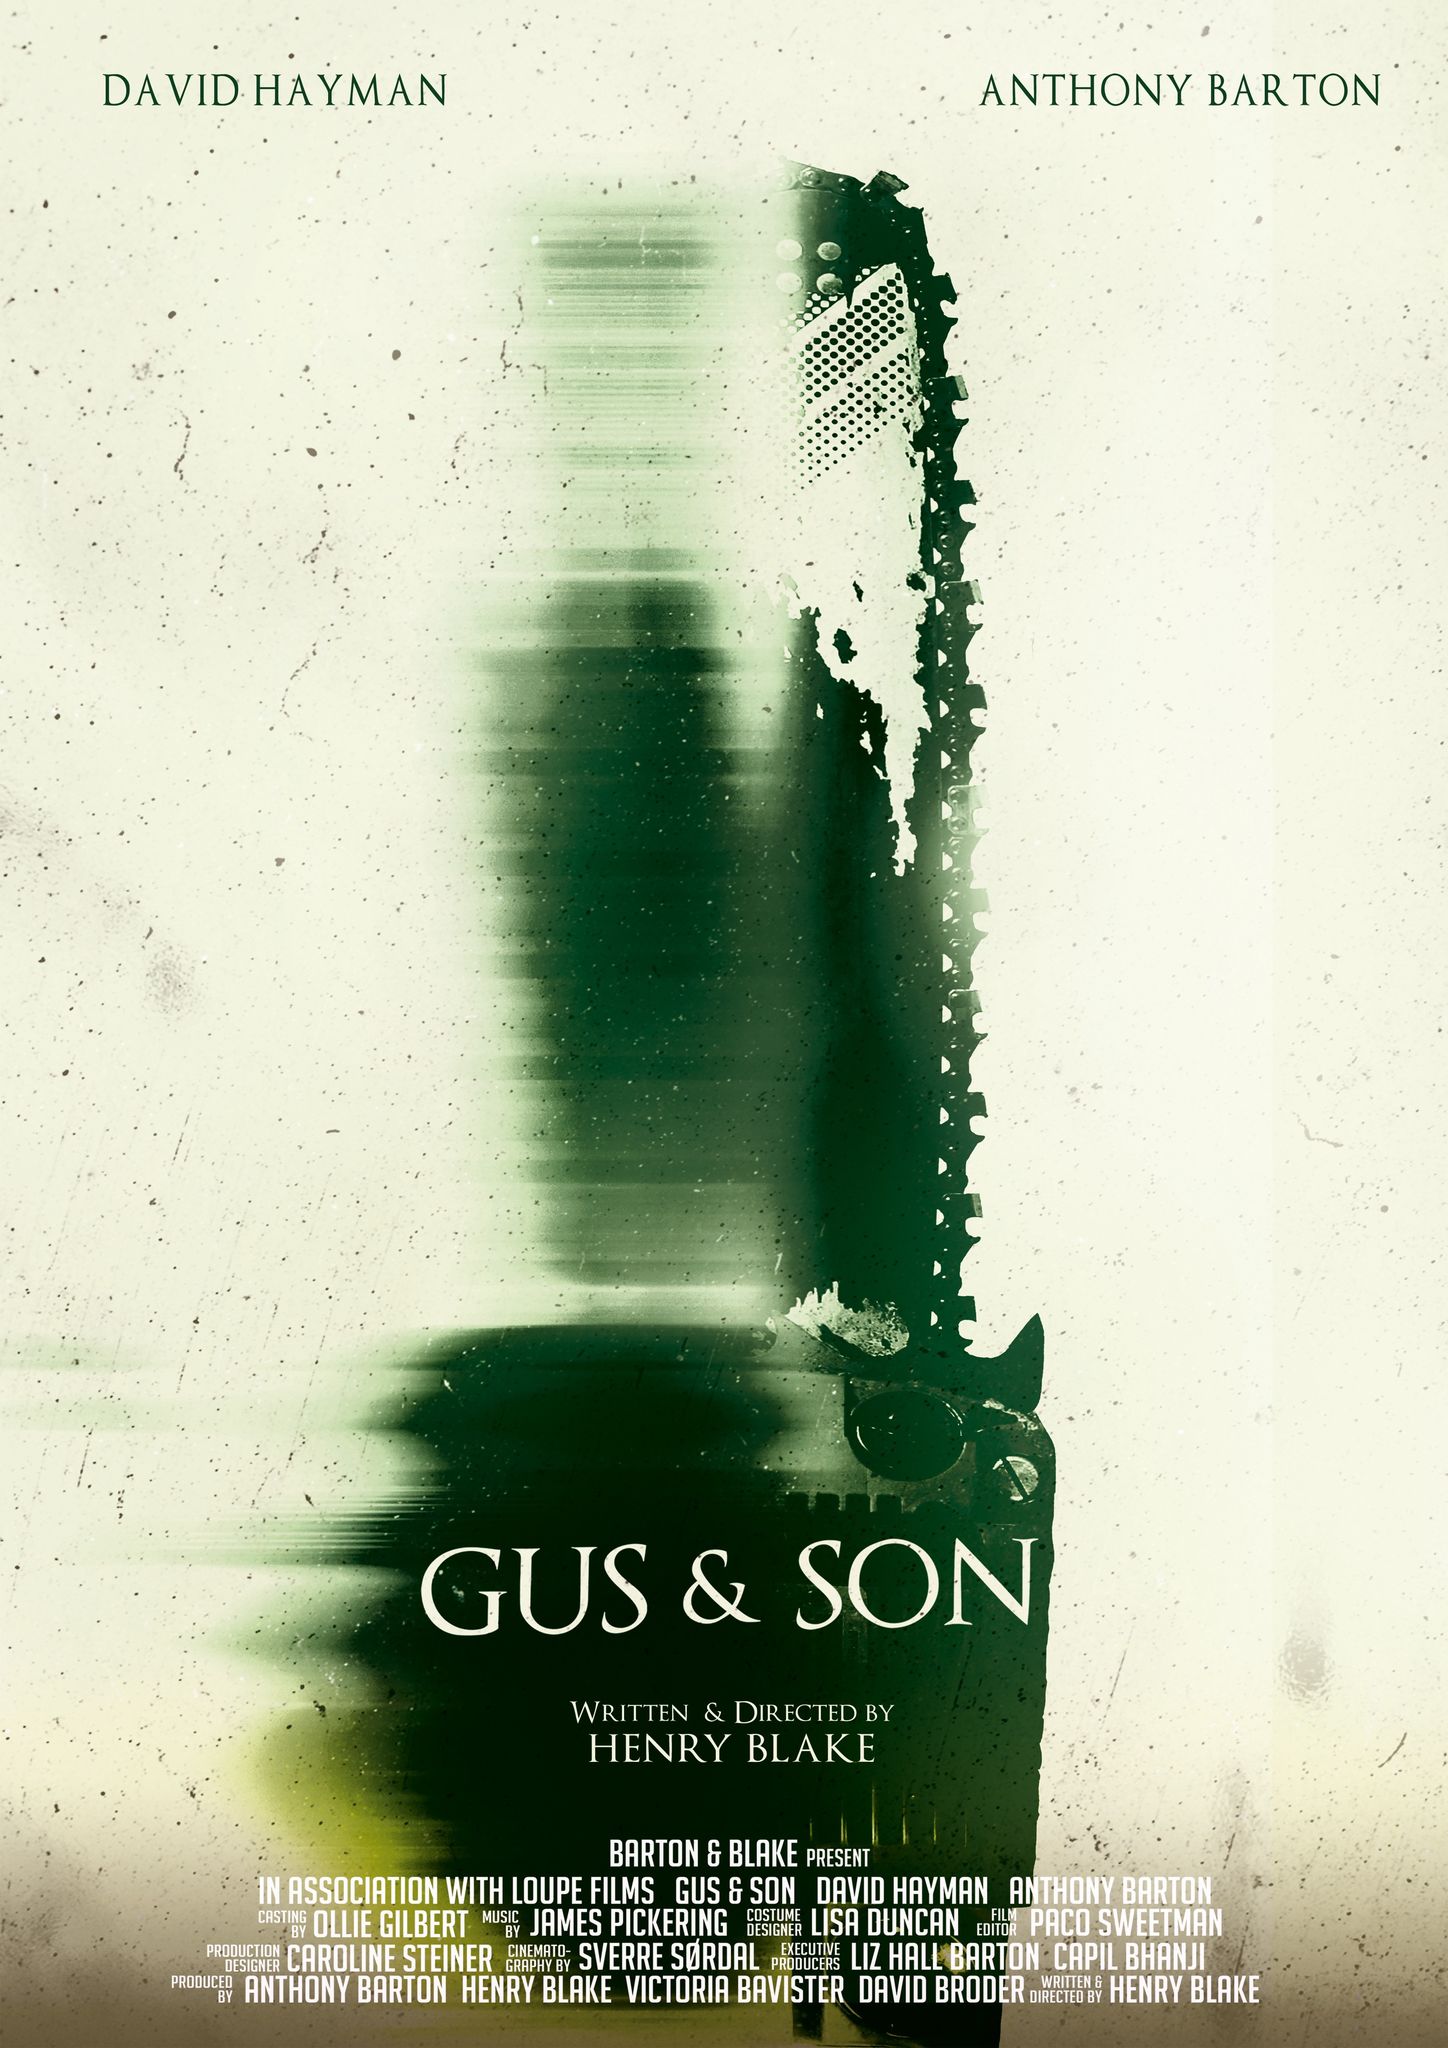 Gus & Son